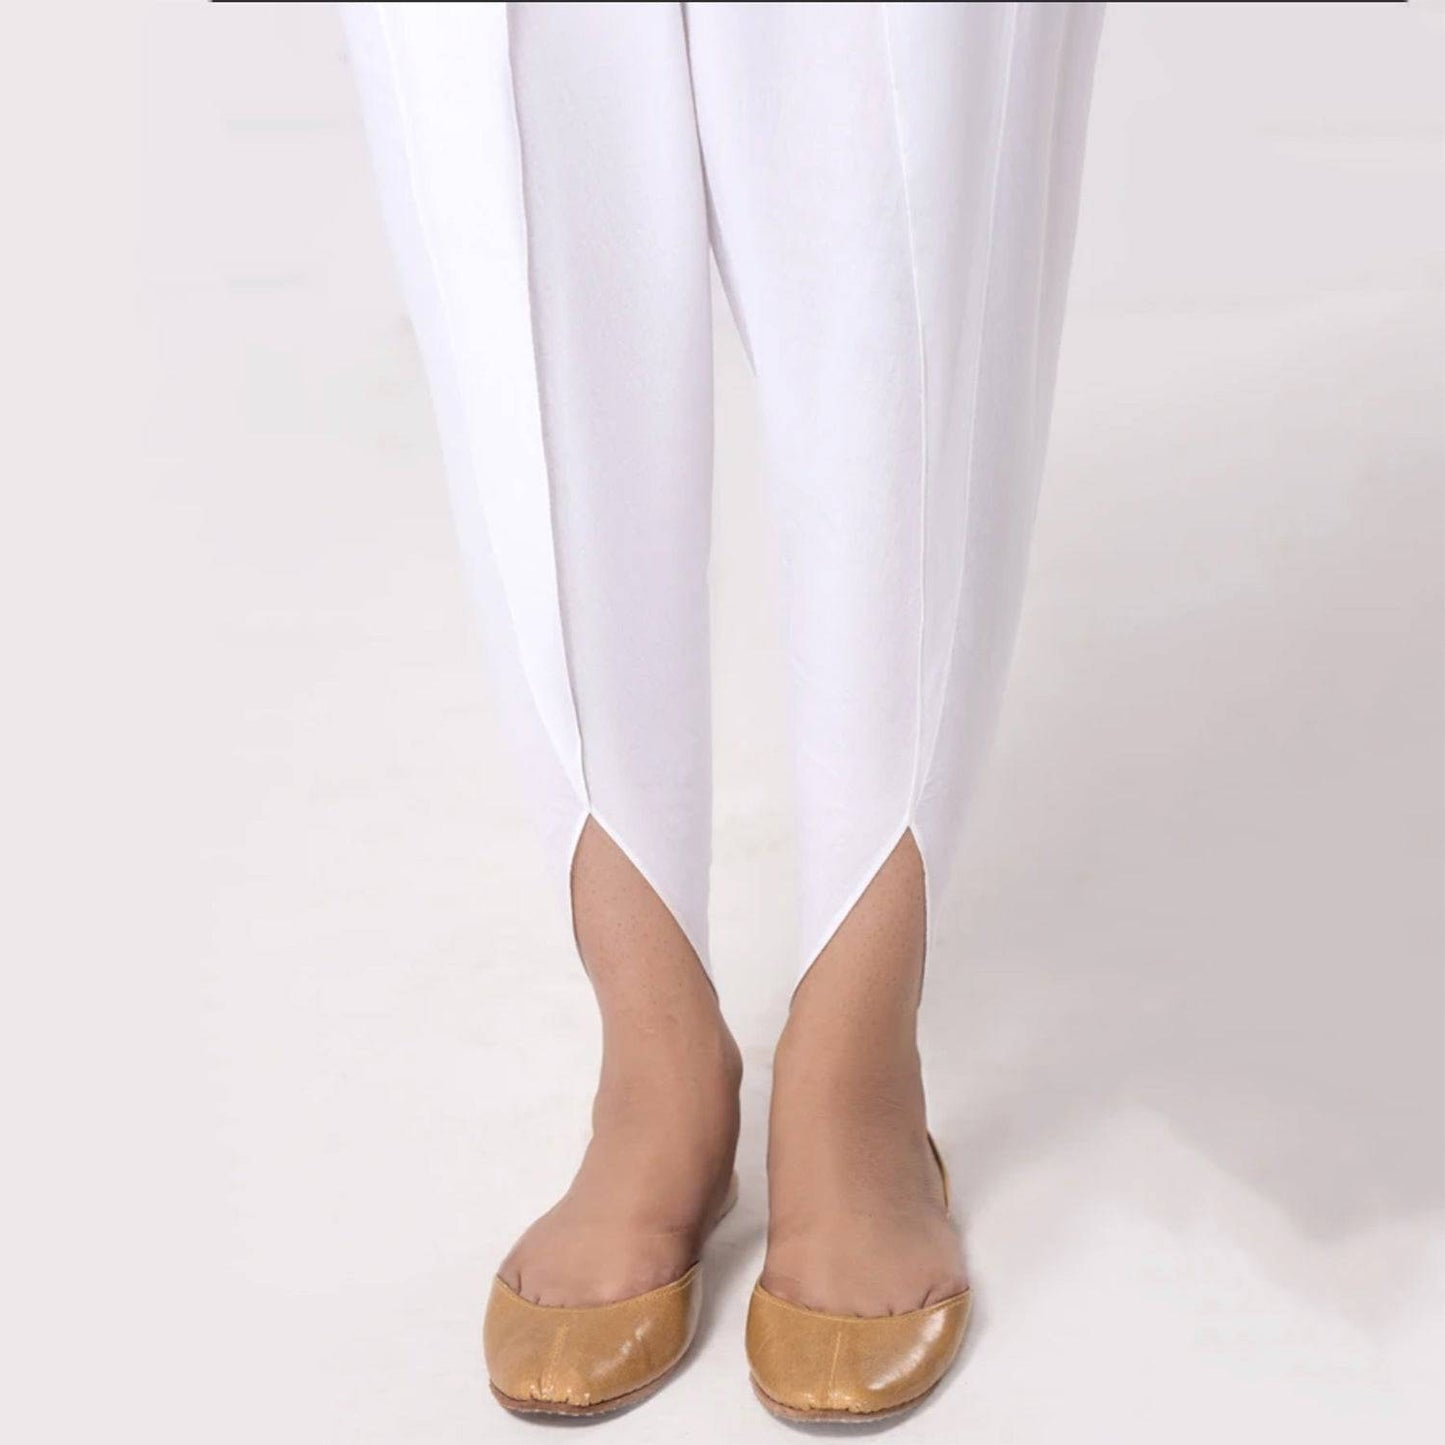 Tulip Pants in Cotton for Women - TPC01 - Dhanak Boutique